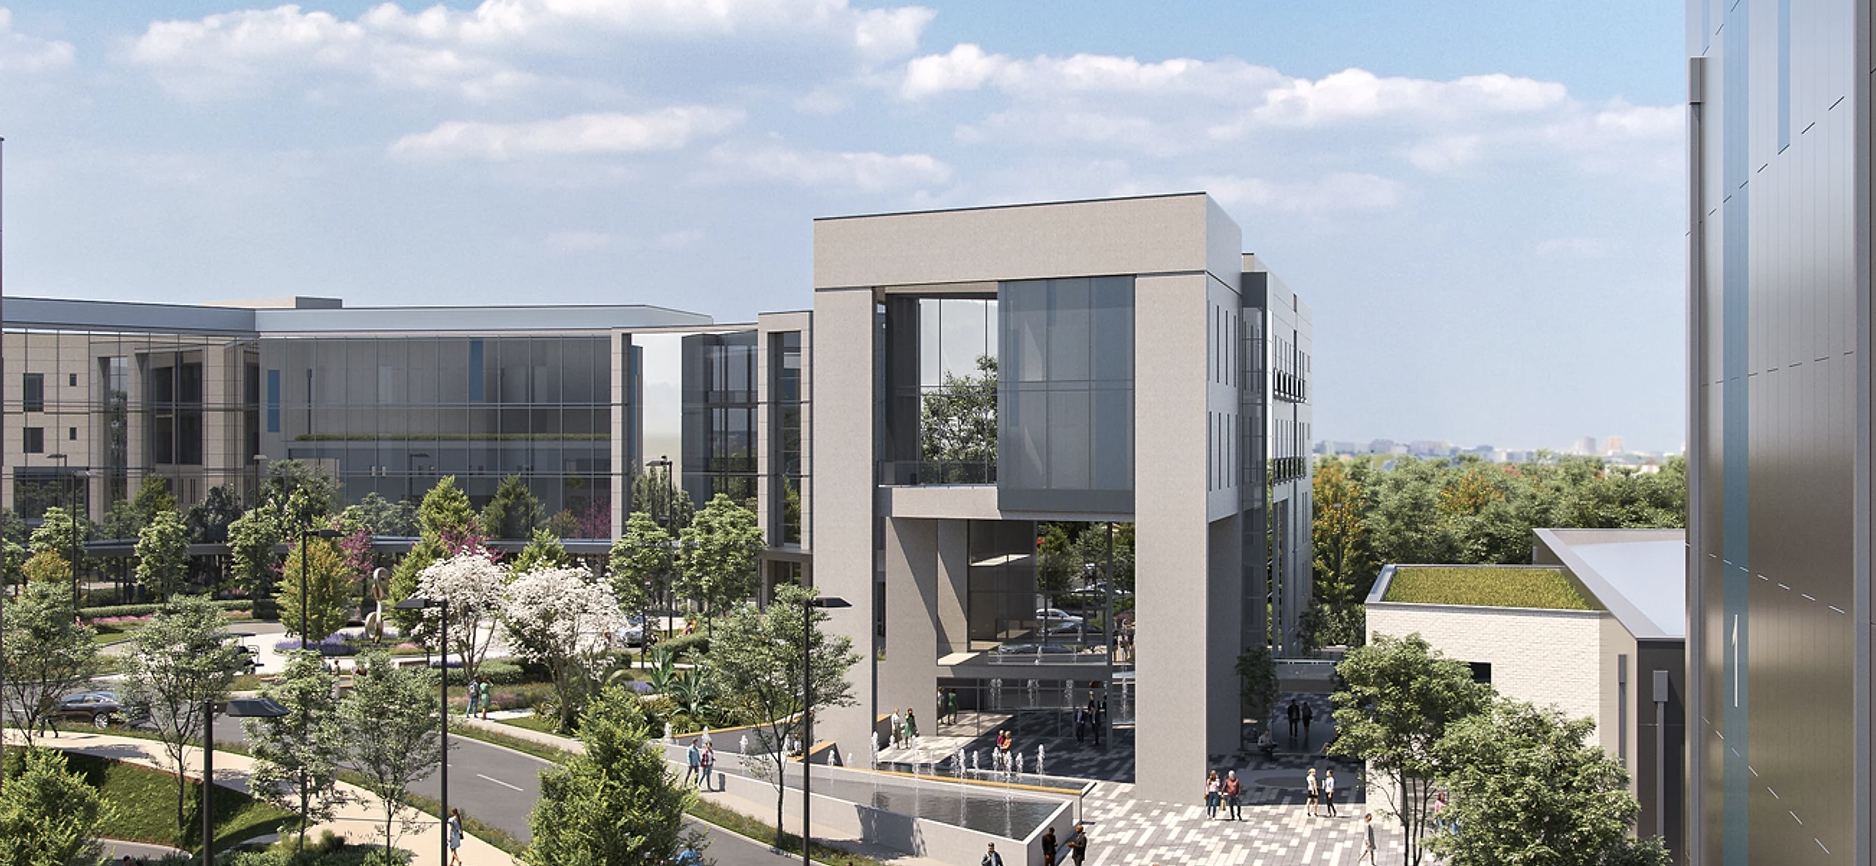 proposed image of Hammerlake Studios in Mullingar